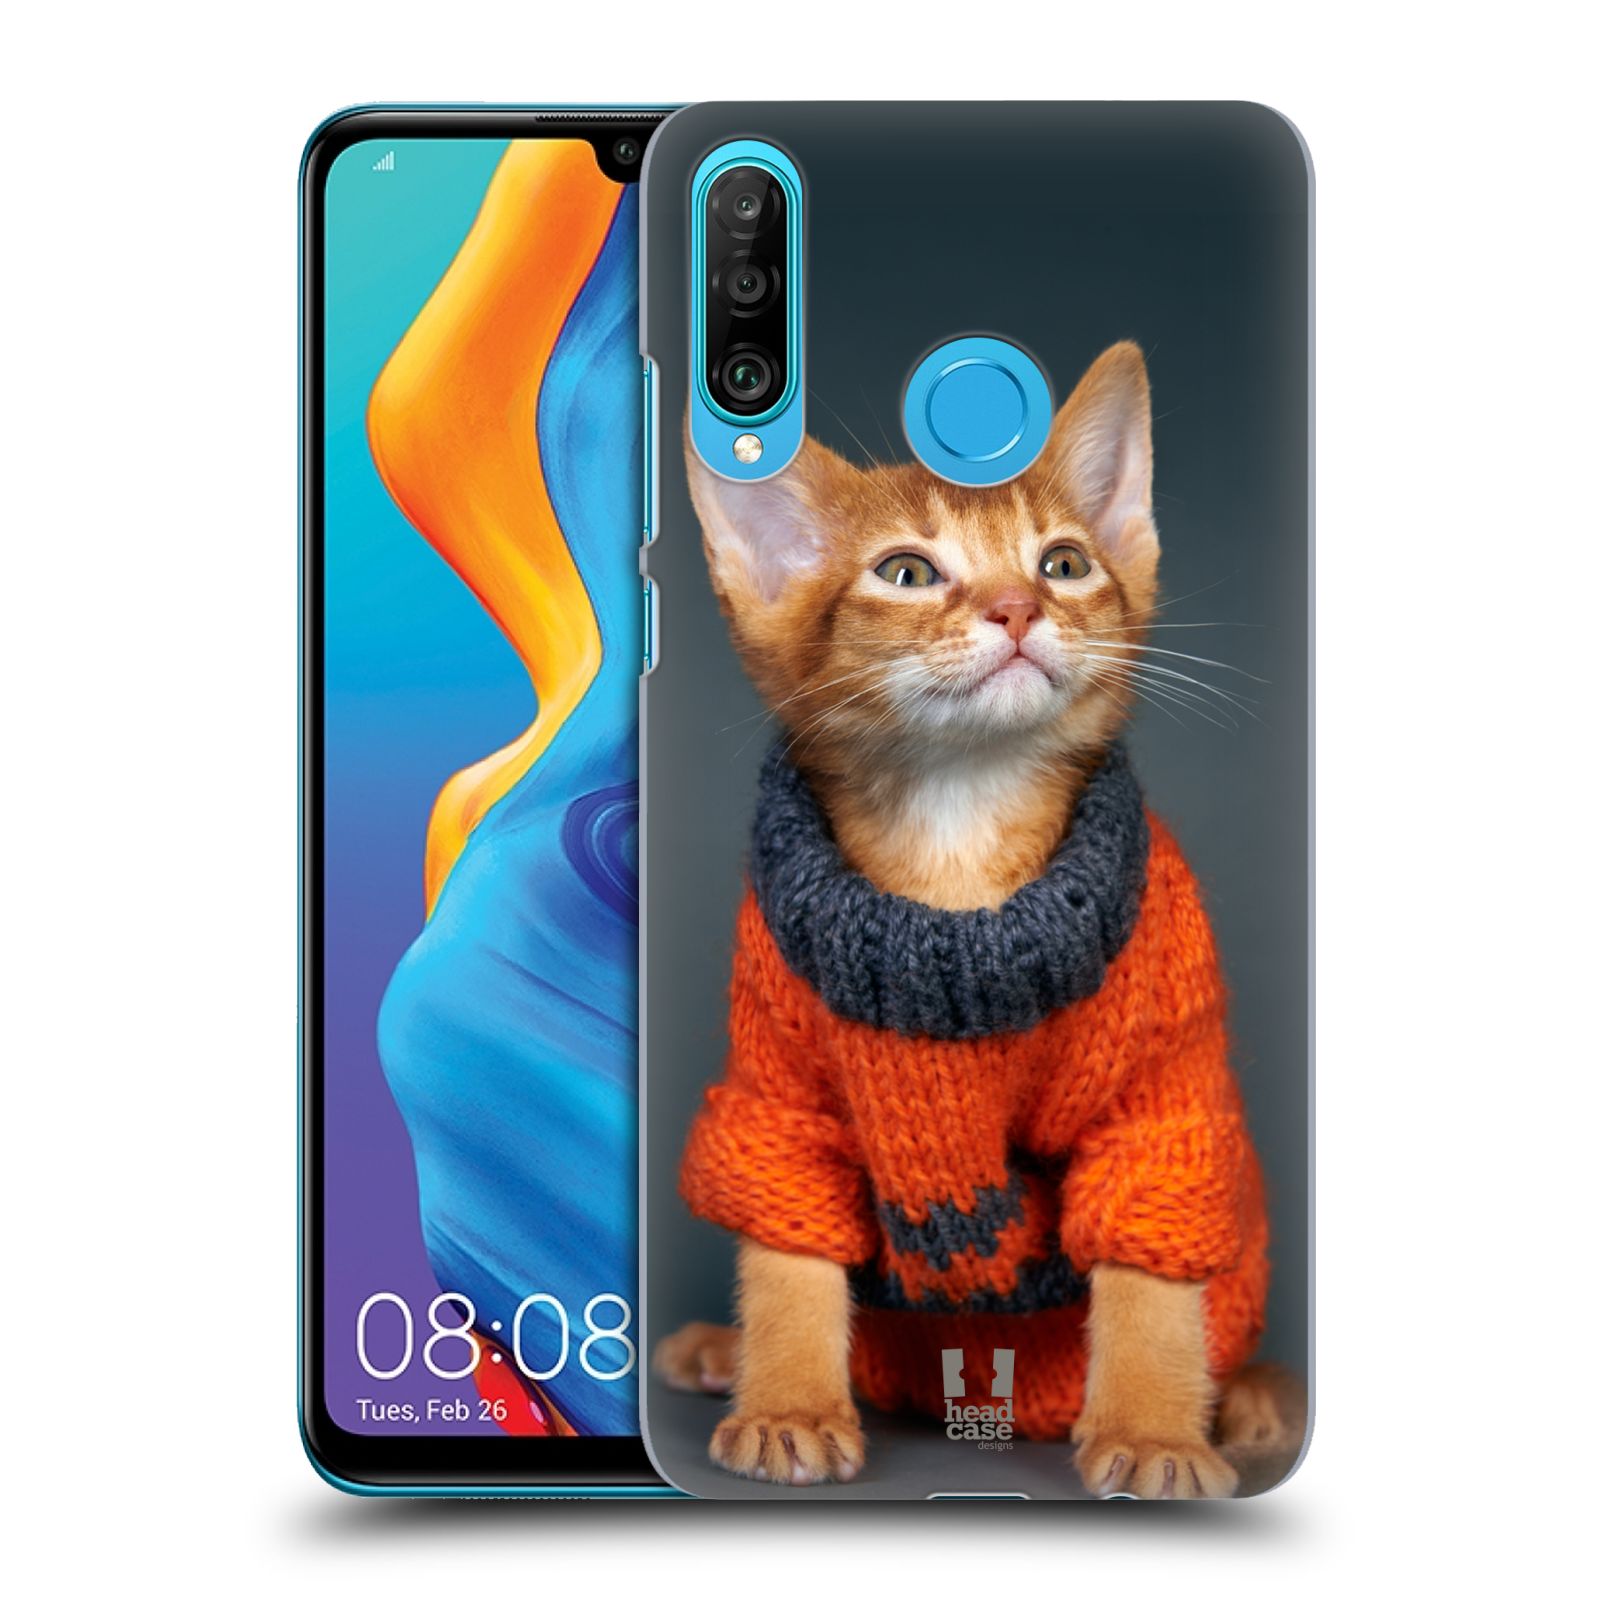 Pouzdro na mobil Huawei P30 LITE - HEAD CASE - vzor Legrační zvířátka kočička v oranžovém svetru